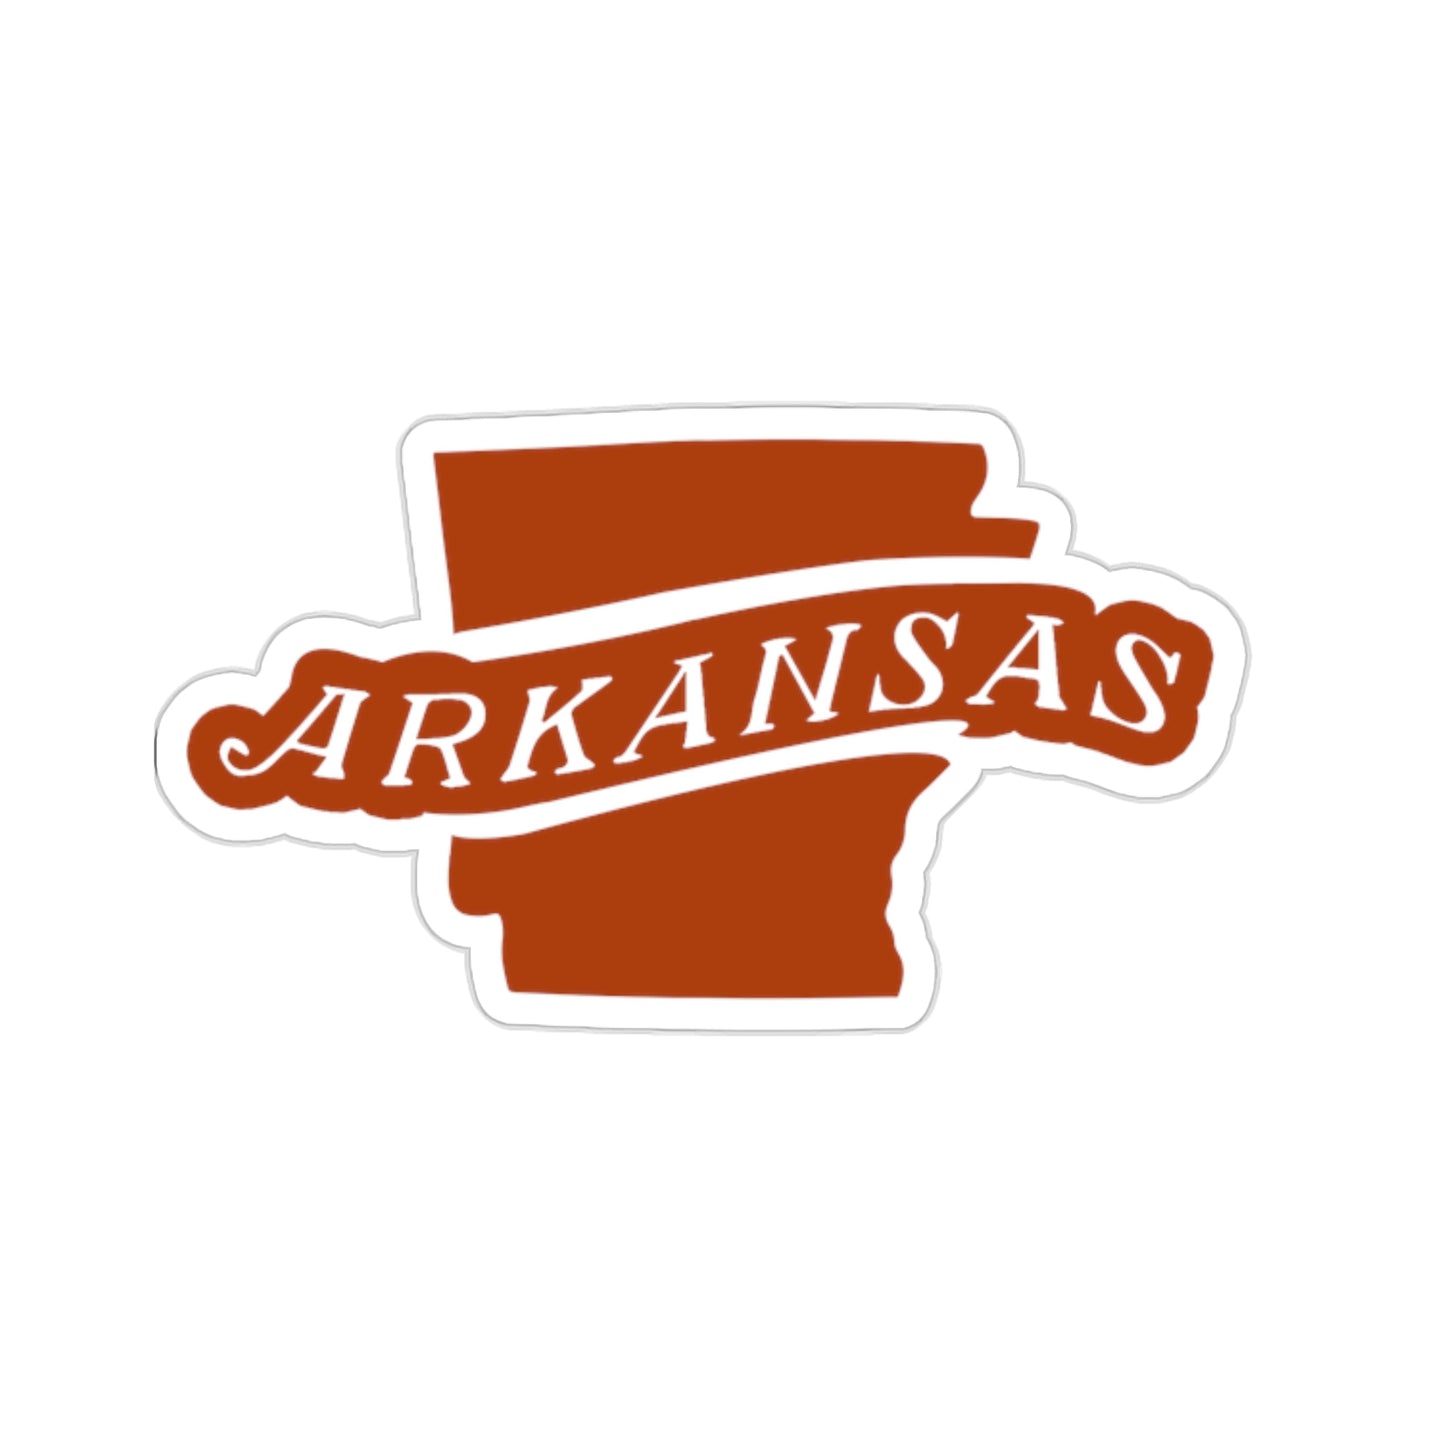 State of Arkansas Die Cut Sticker